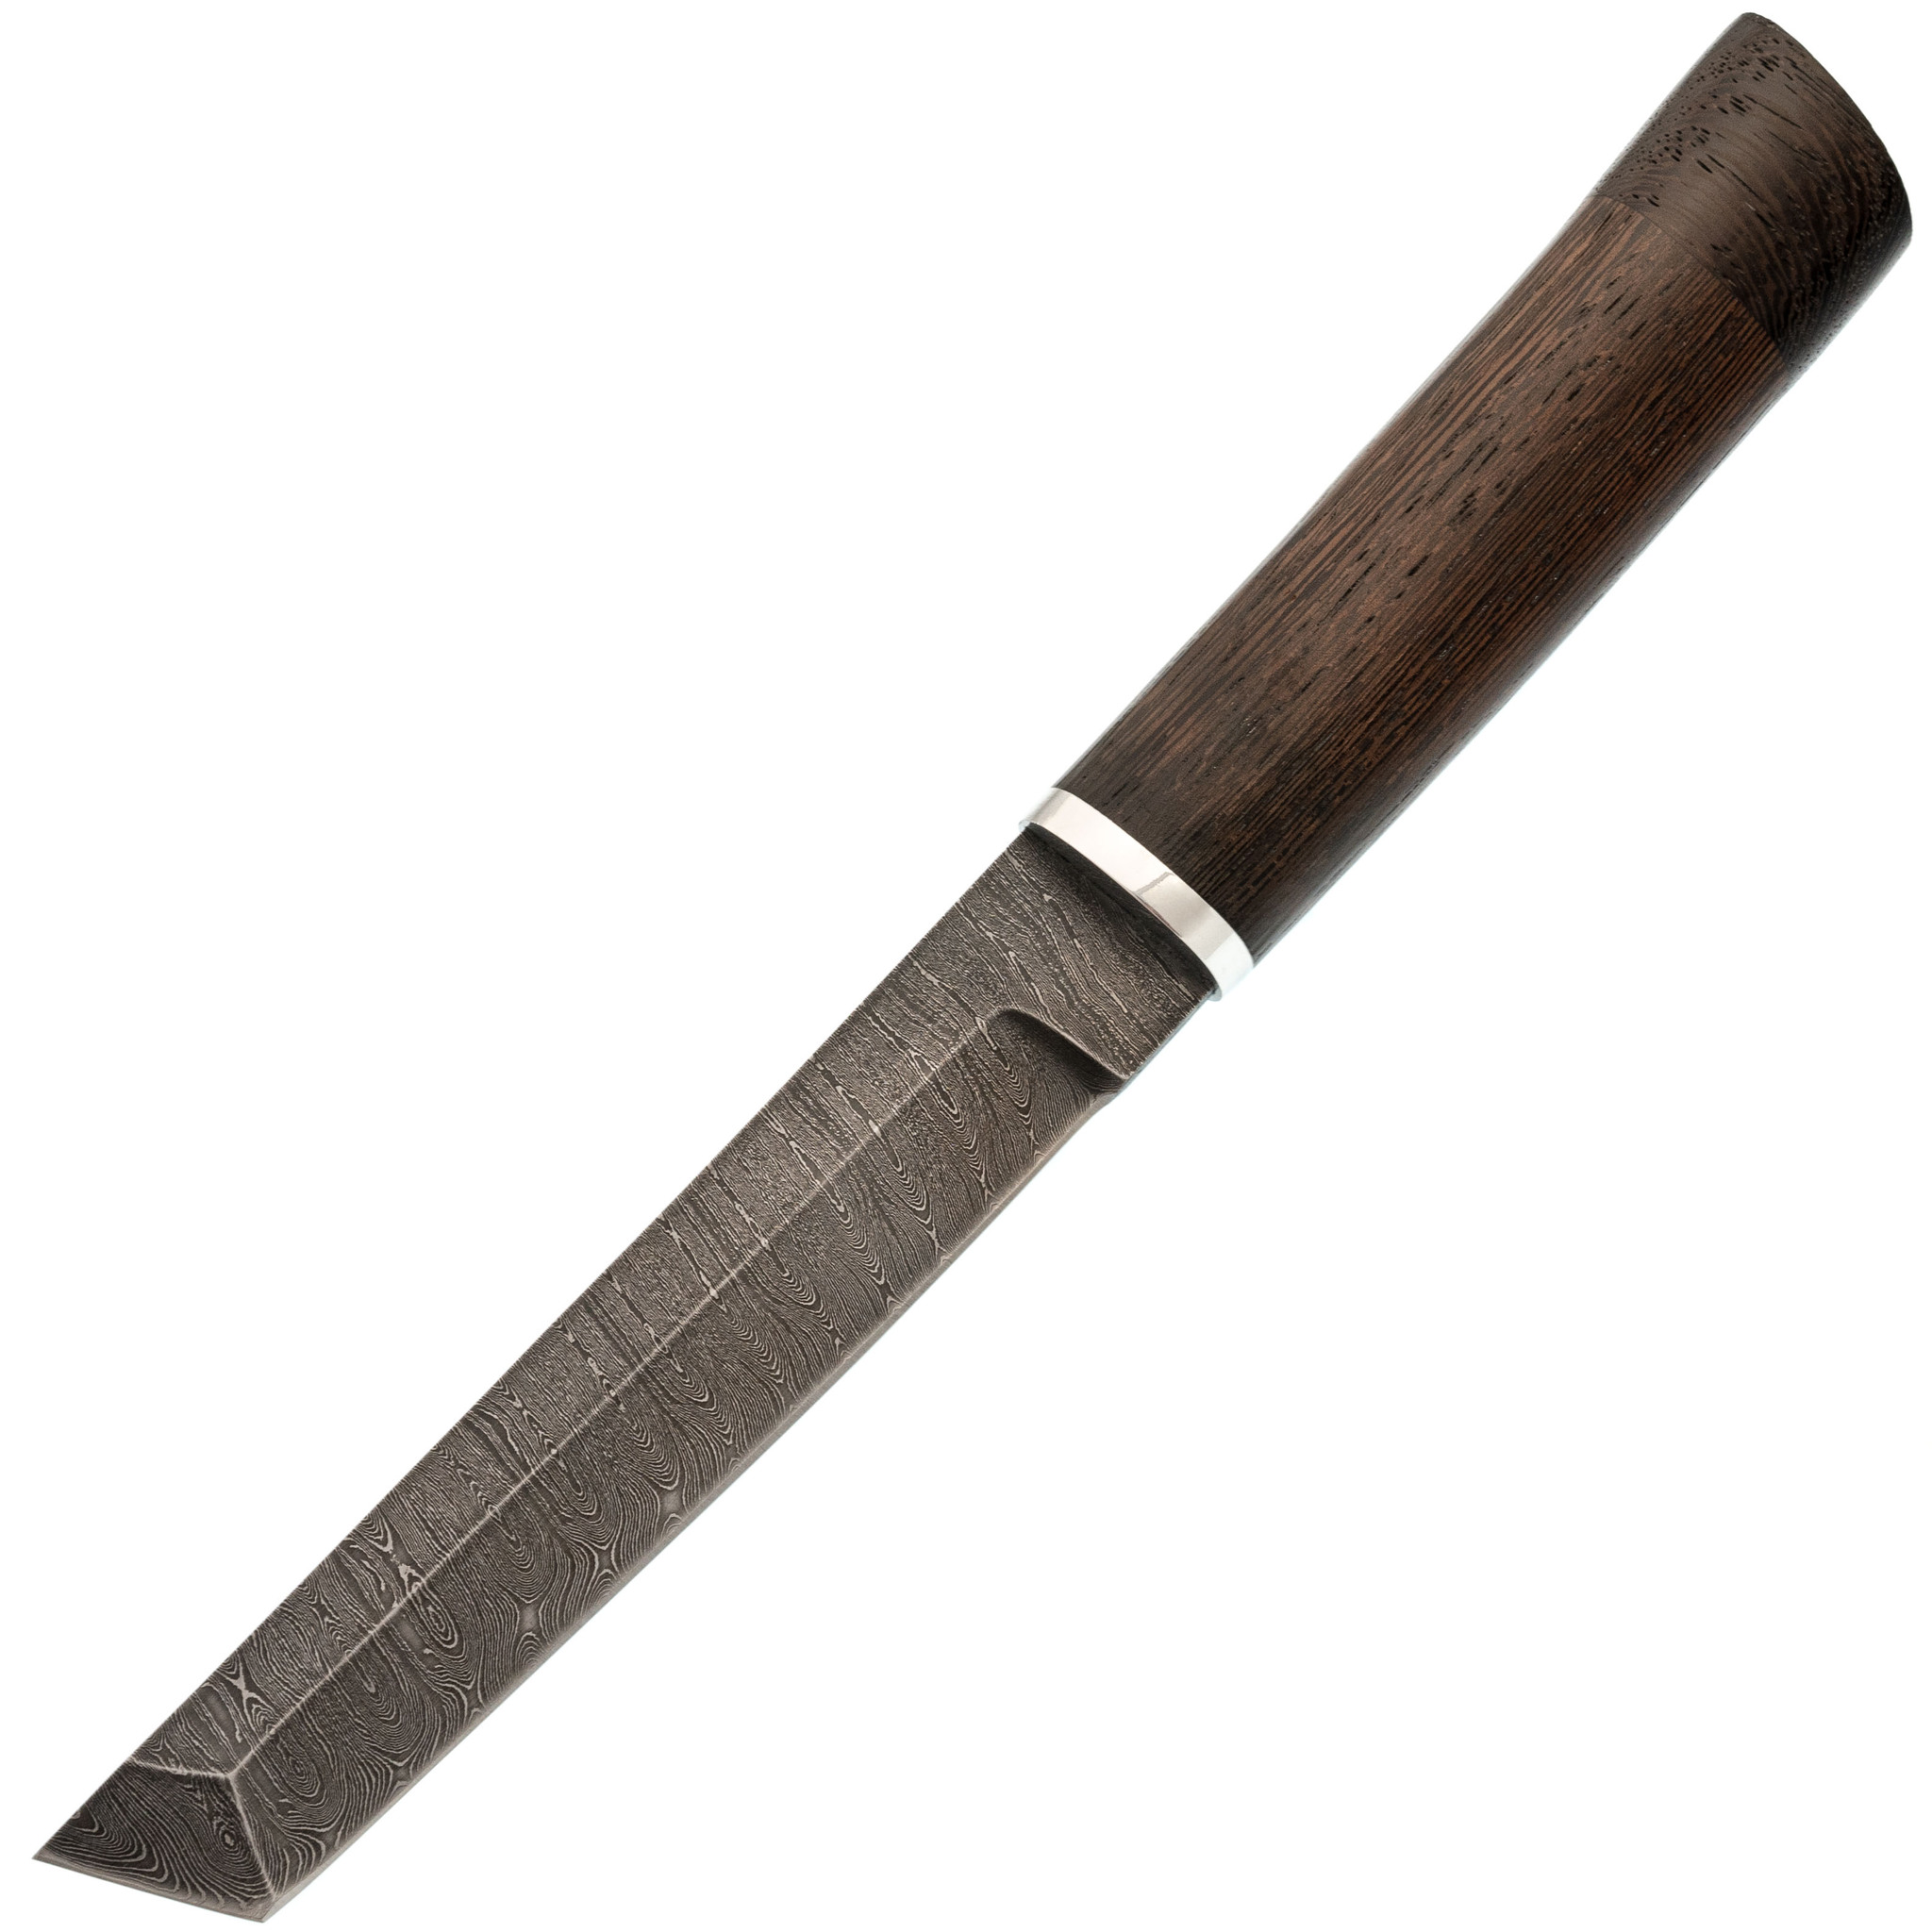 Нож Танто-2, сталь дамаск, рукоять венге